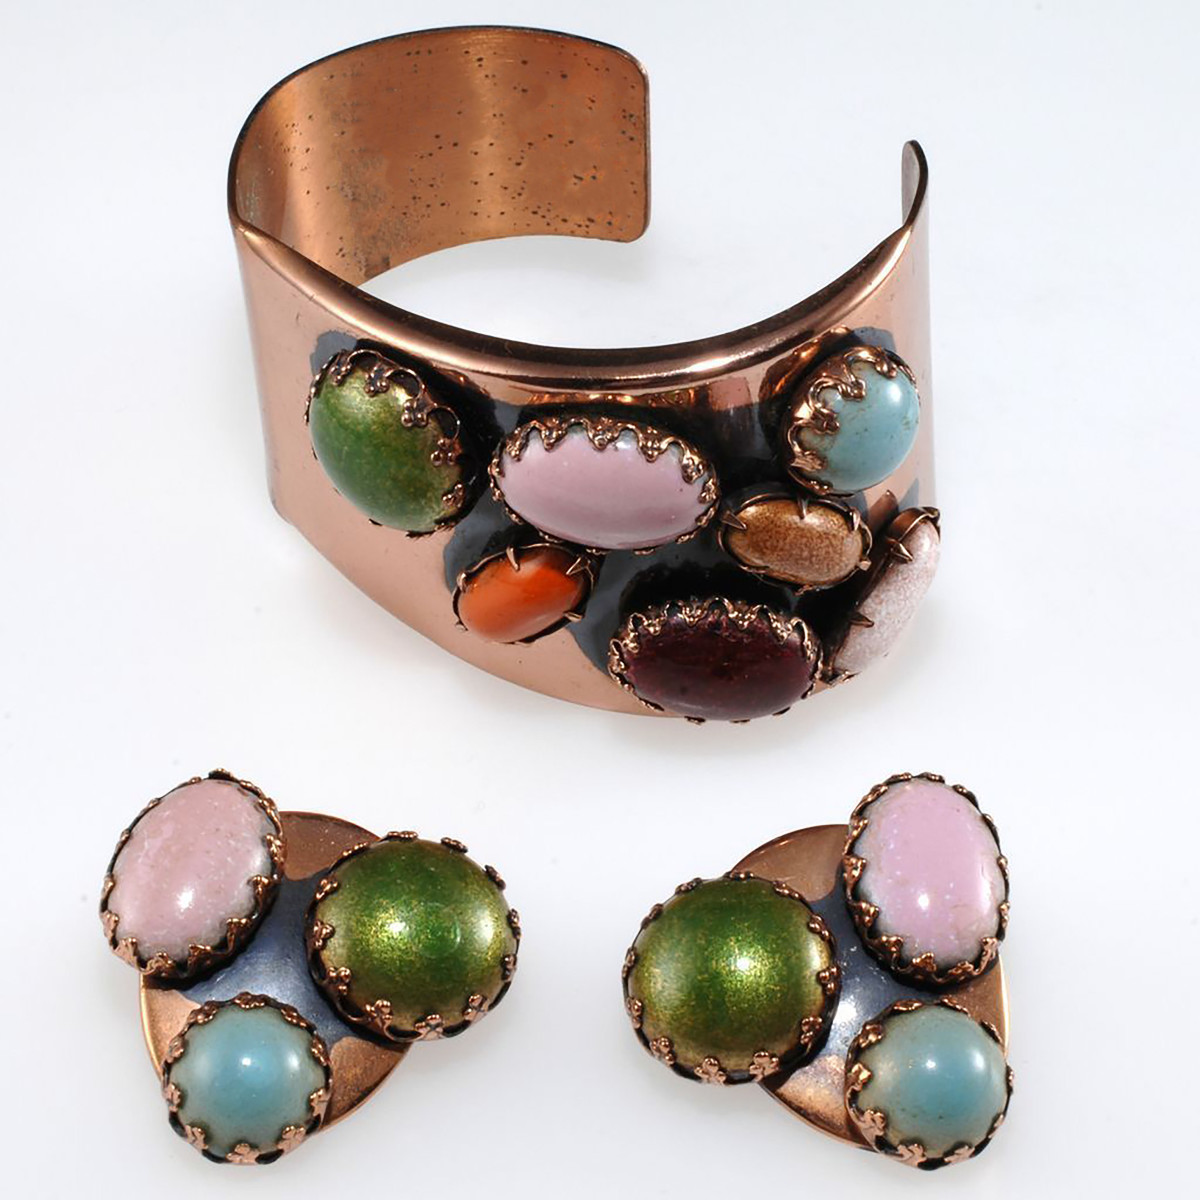 Renoir Matisse “Scarabs” bracelet and earrings set.